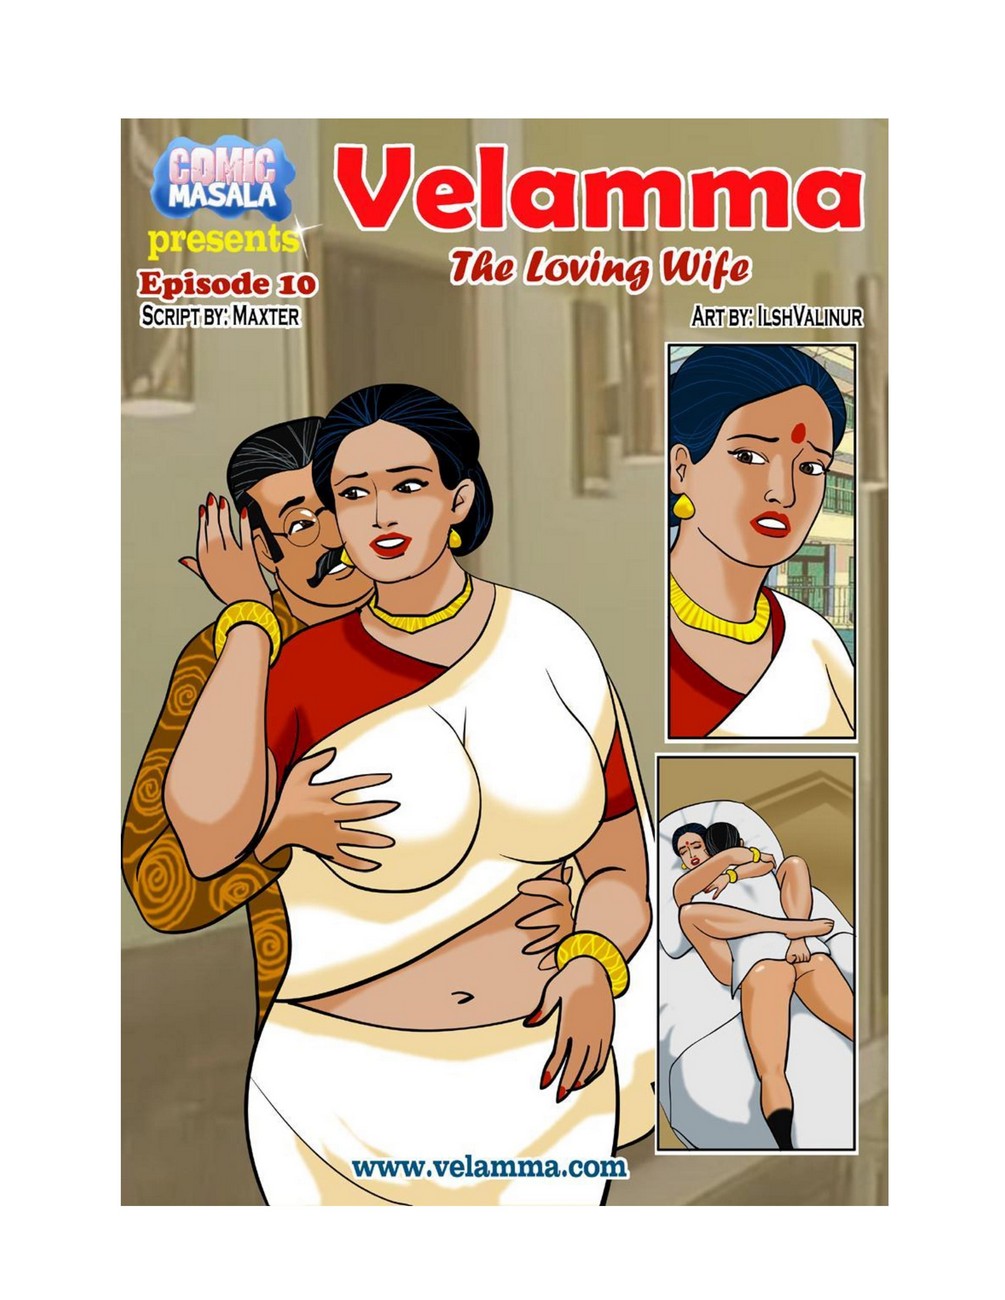 Velamma 10 The Loving Wife00